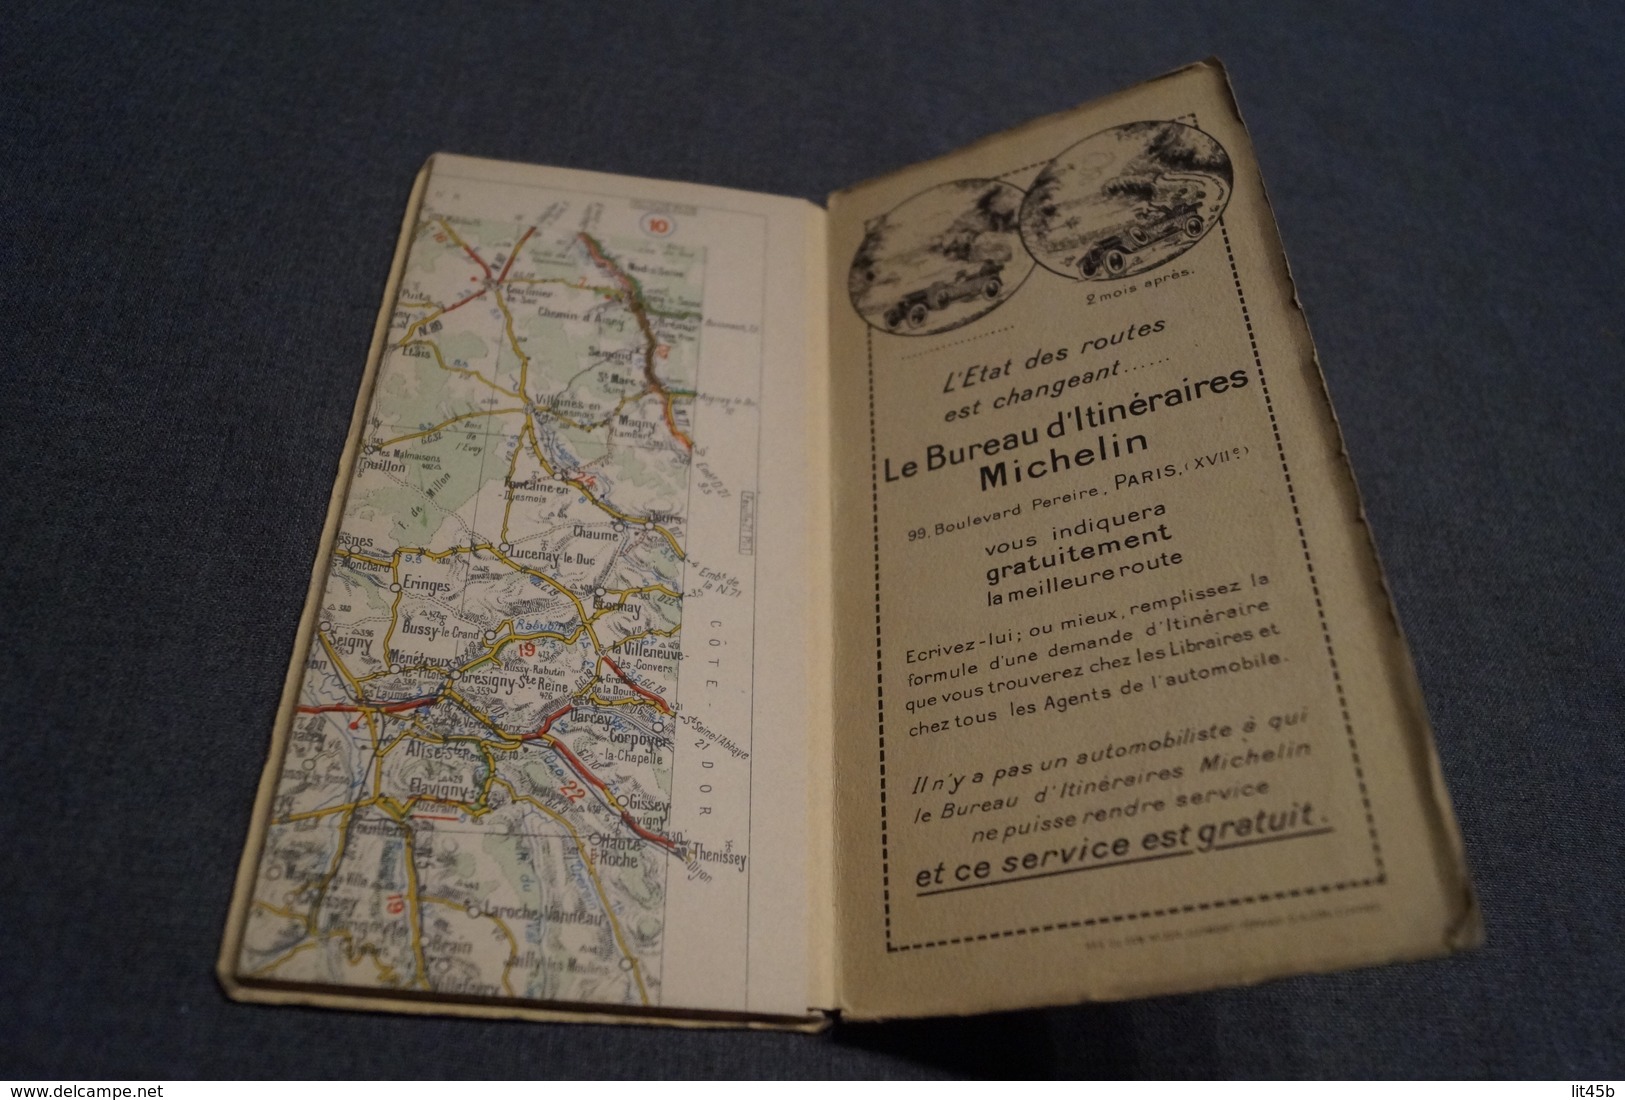 très ancienne carte Michelin,N° 20 , Gien - Auxerre.état de collection,originale